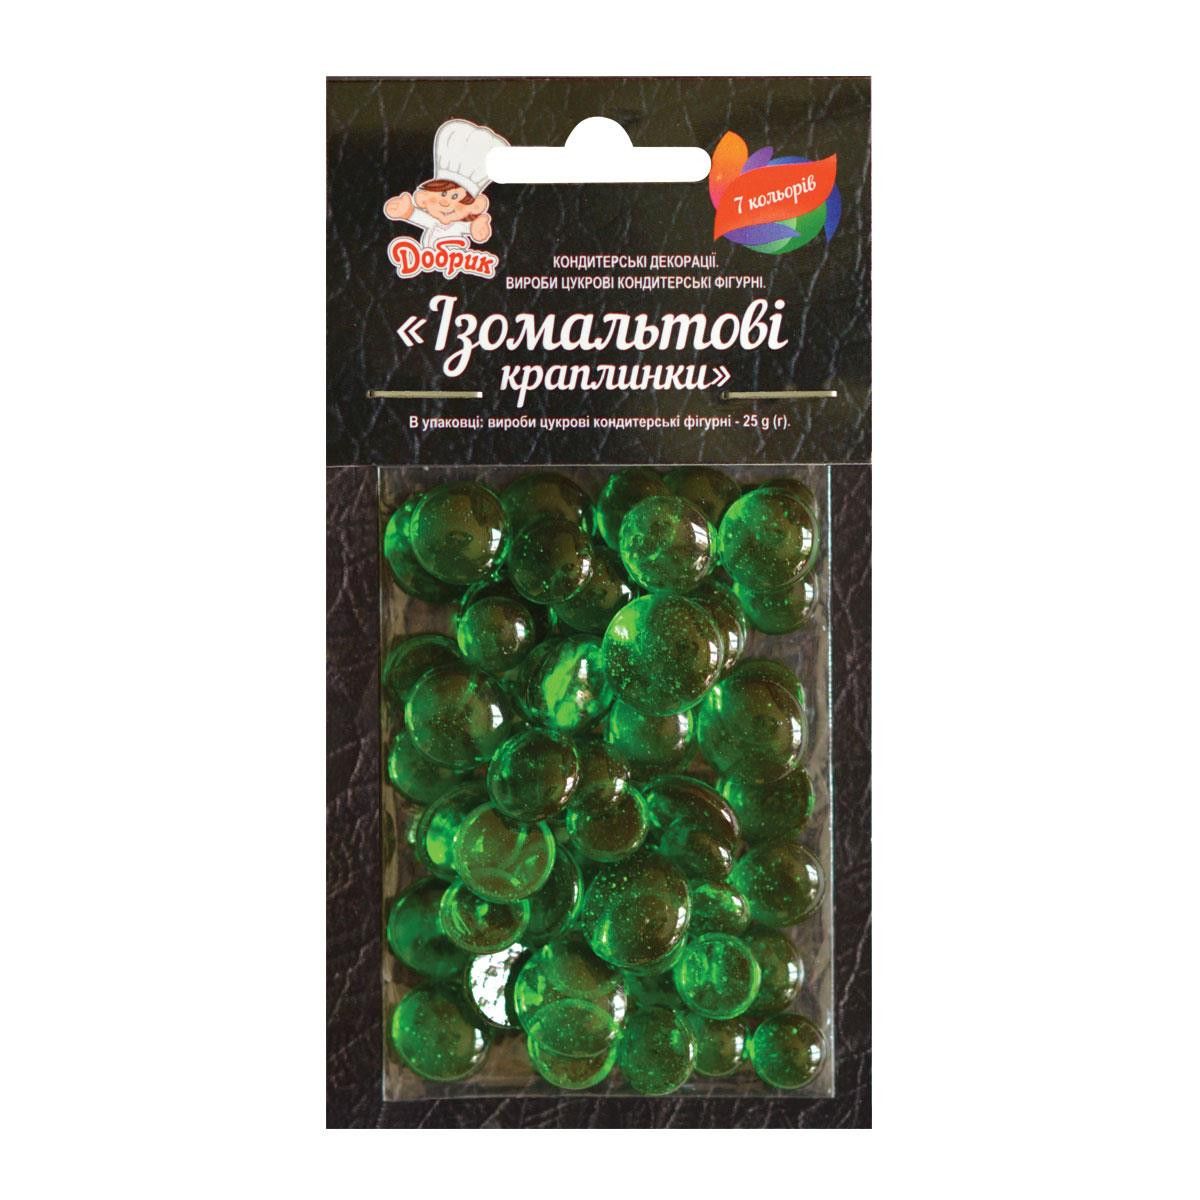 ⋗ Ізомальтові краплинки зелені купити в Україні ➛ CakeShop.com.ua, фото